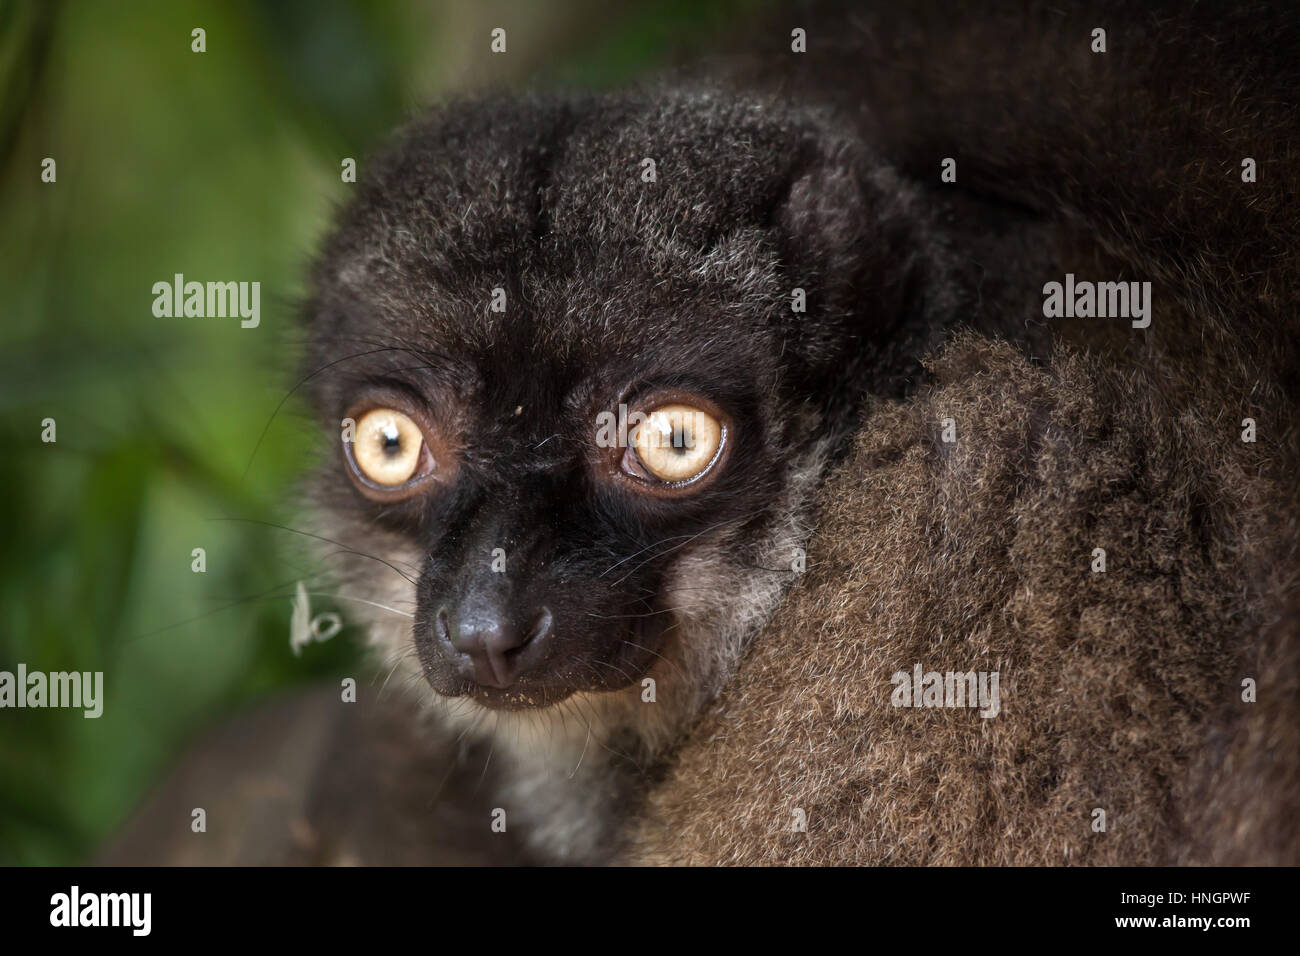 Hembra de cabeza blanca lemur (Eulemur albifrons), también conocido como el lemur marrón de fachada blanca. Foto de stock